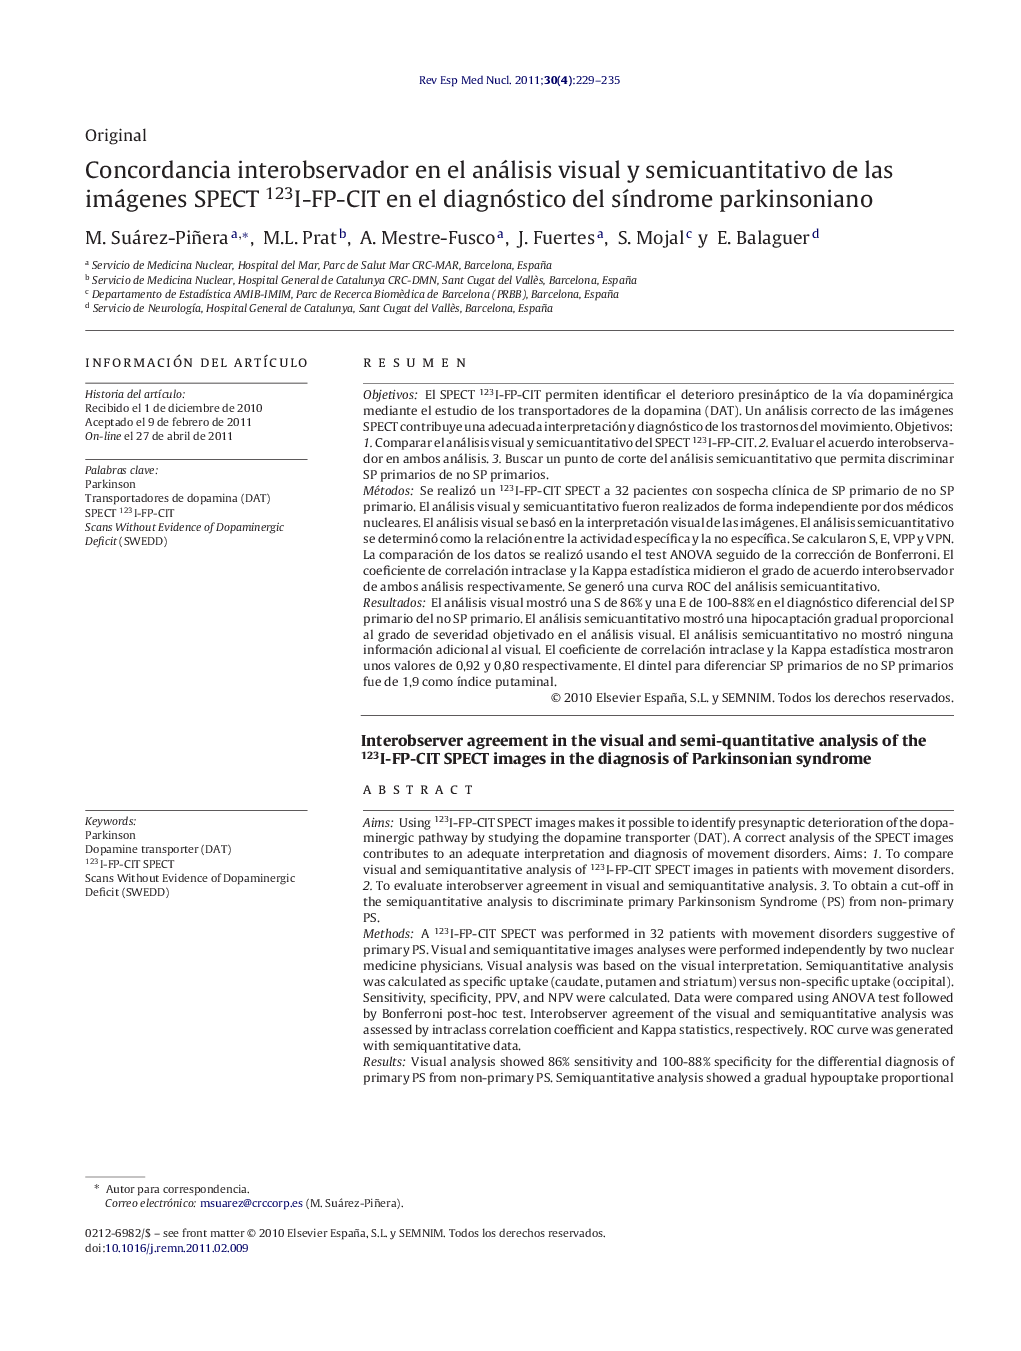 Concordancia interobservador en el análisis visual y semicuantitativo de las imágenes SPECT 123I-FP-CIT en el diagnóstico del síndrome parkinsoniano